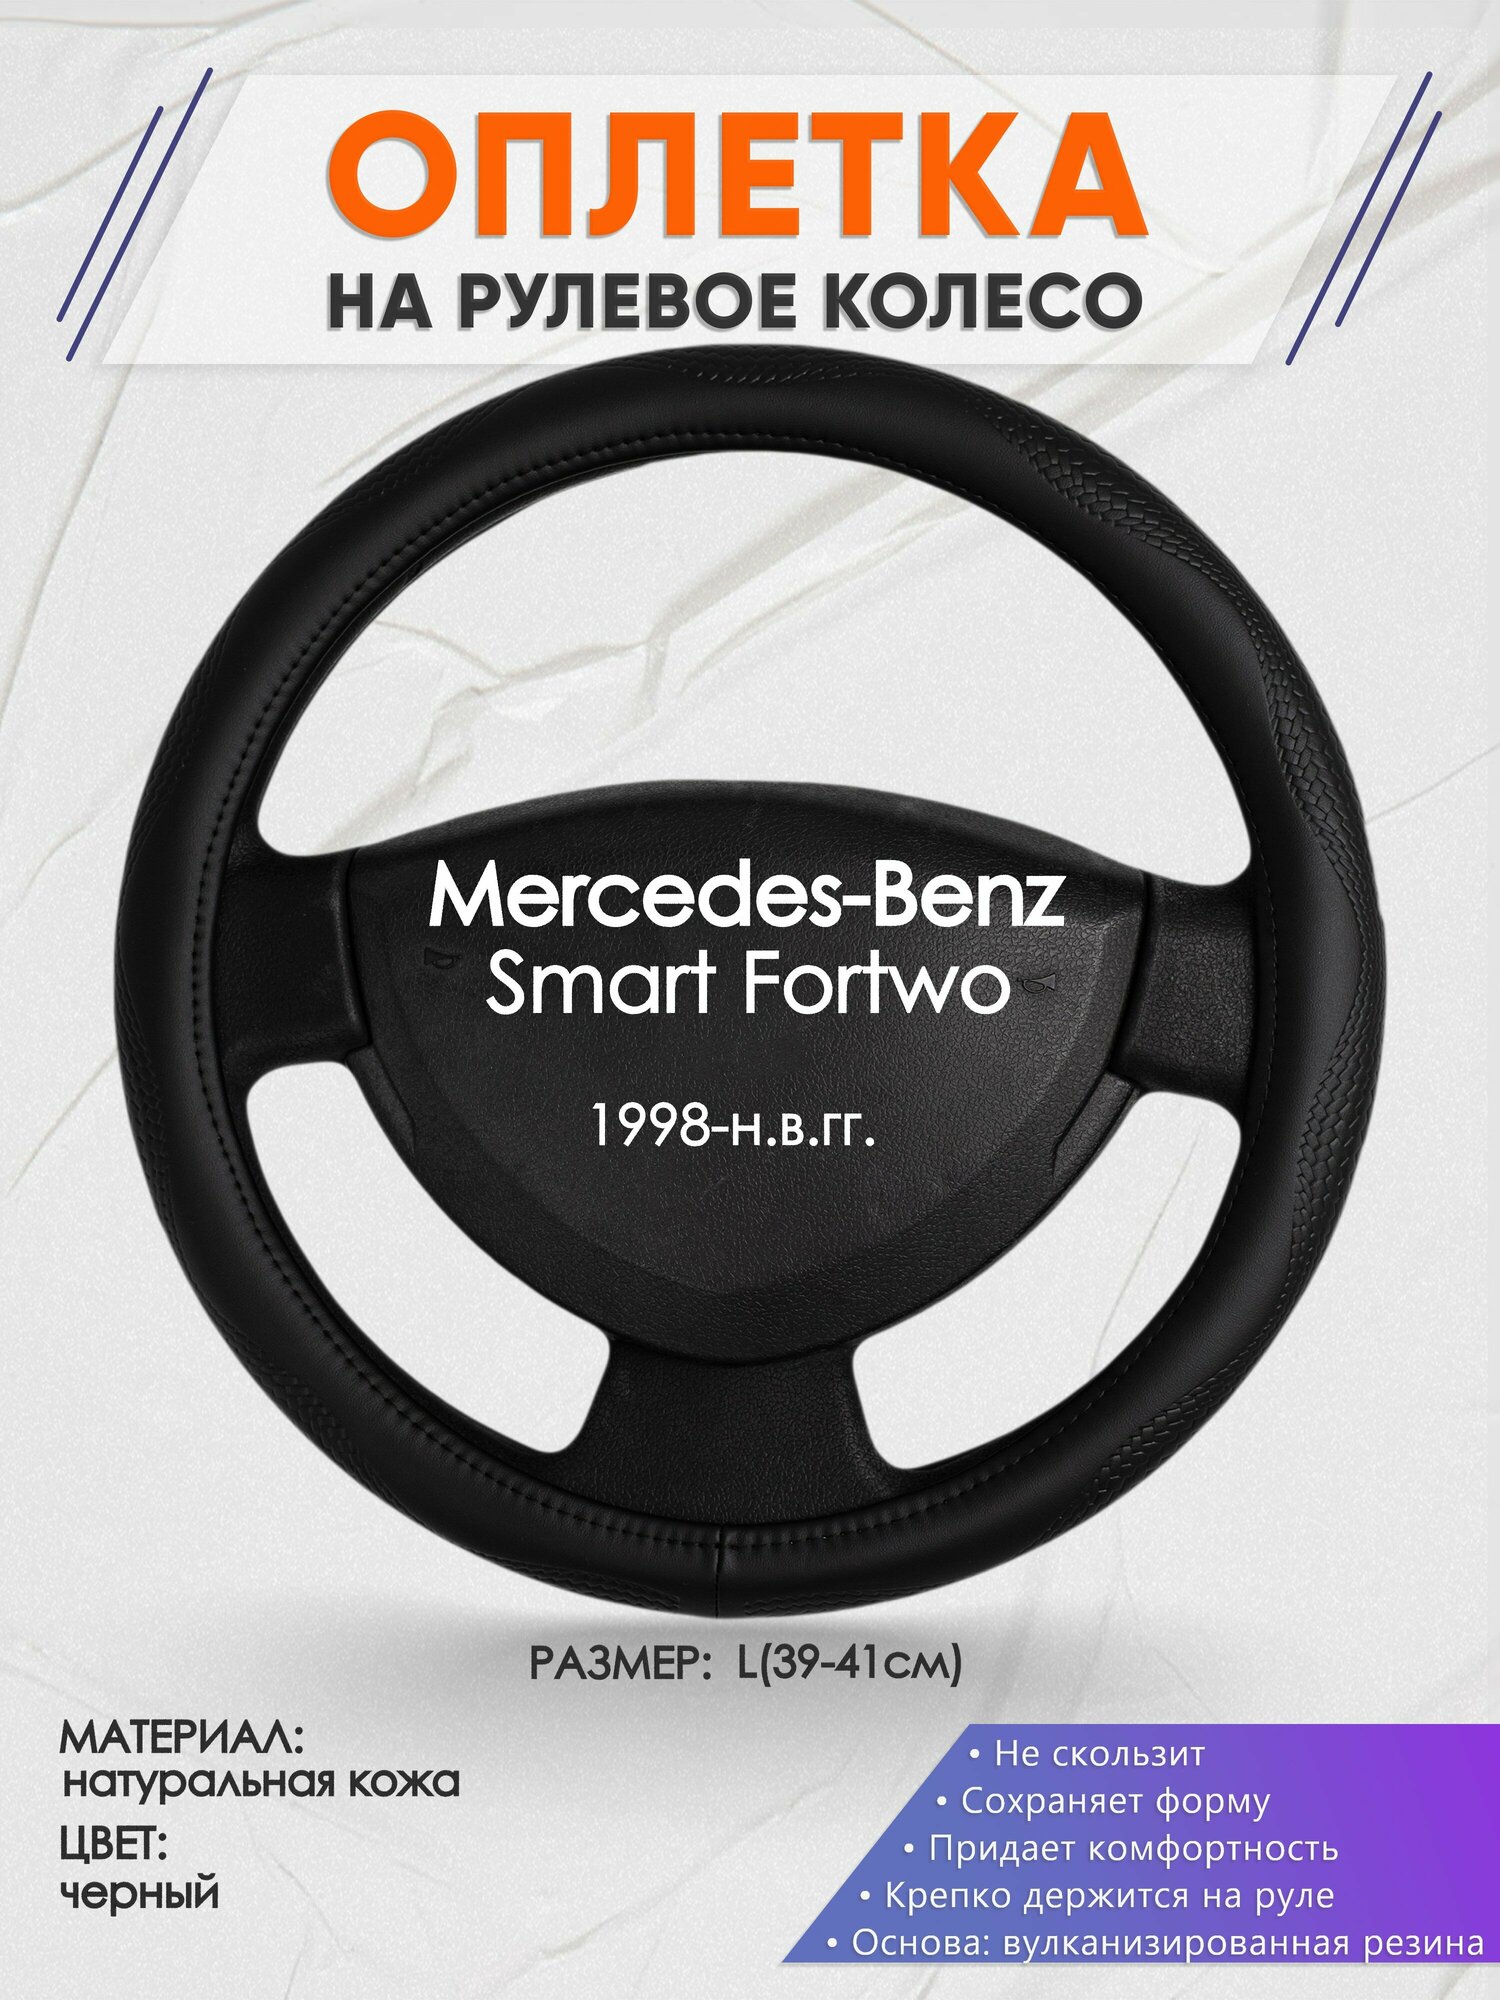 Оплетка на руль для Mercedes-Benz Smart Fortwo(Мерседес Бенц Фортво) 1998-н. в, L(39-41см), Натуральная кожа 32